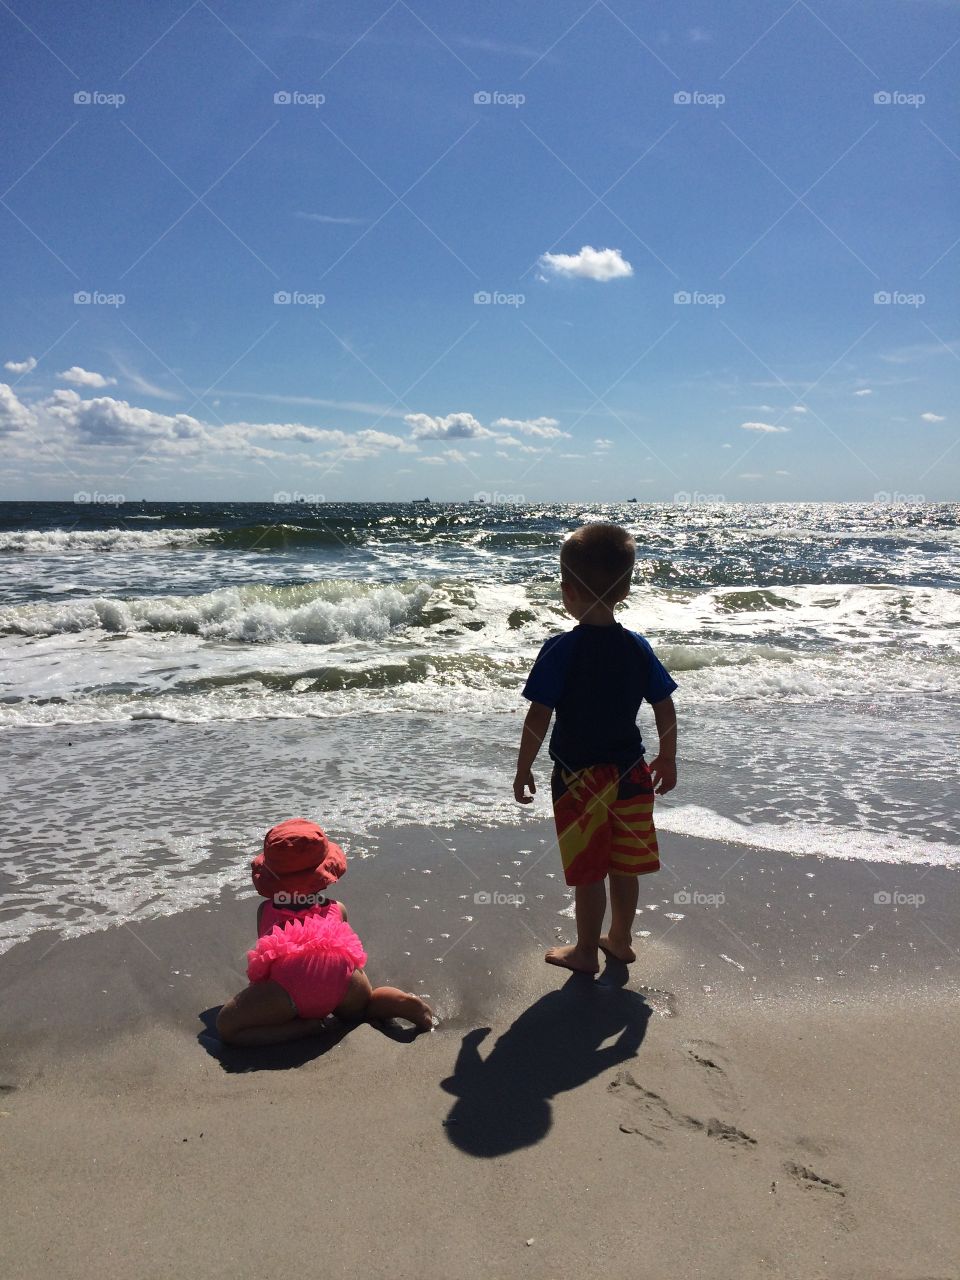 Kids by the ocean 